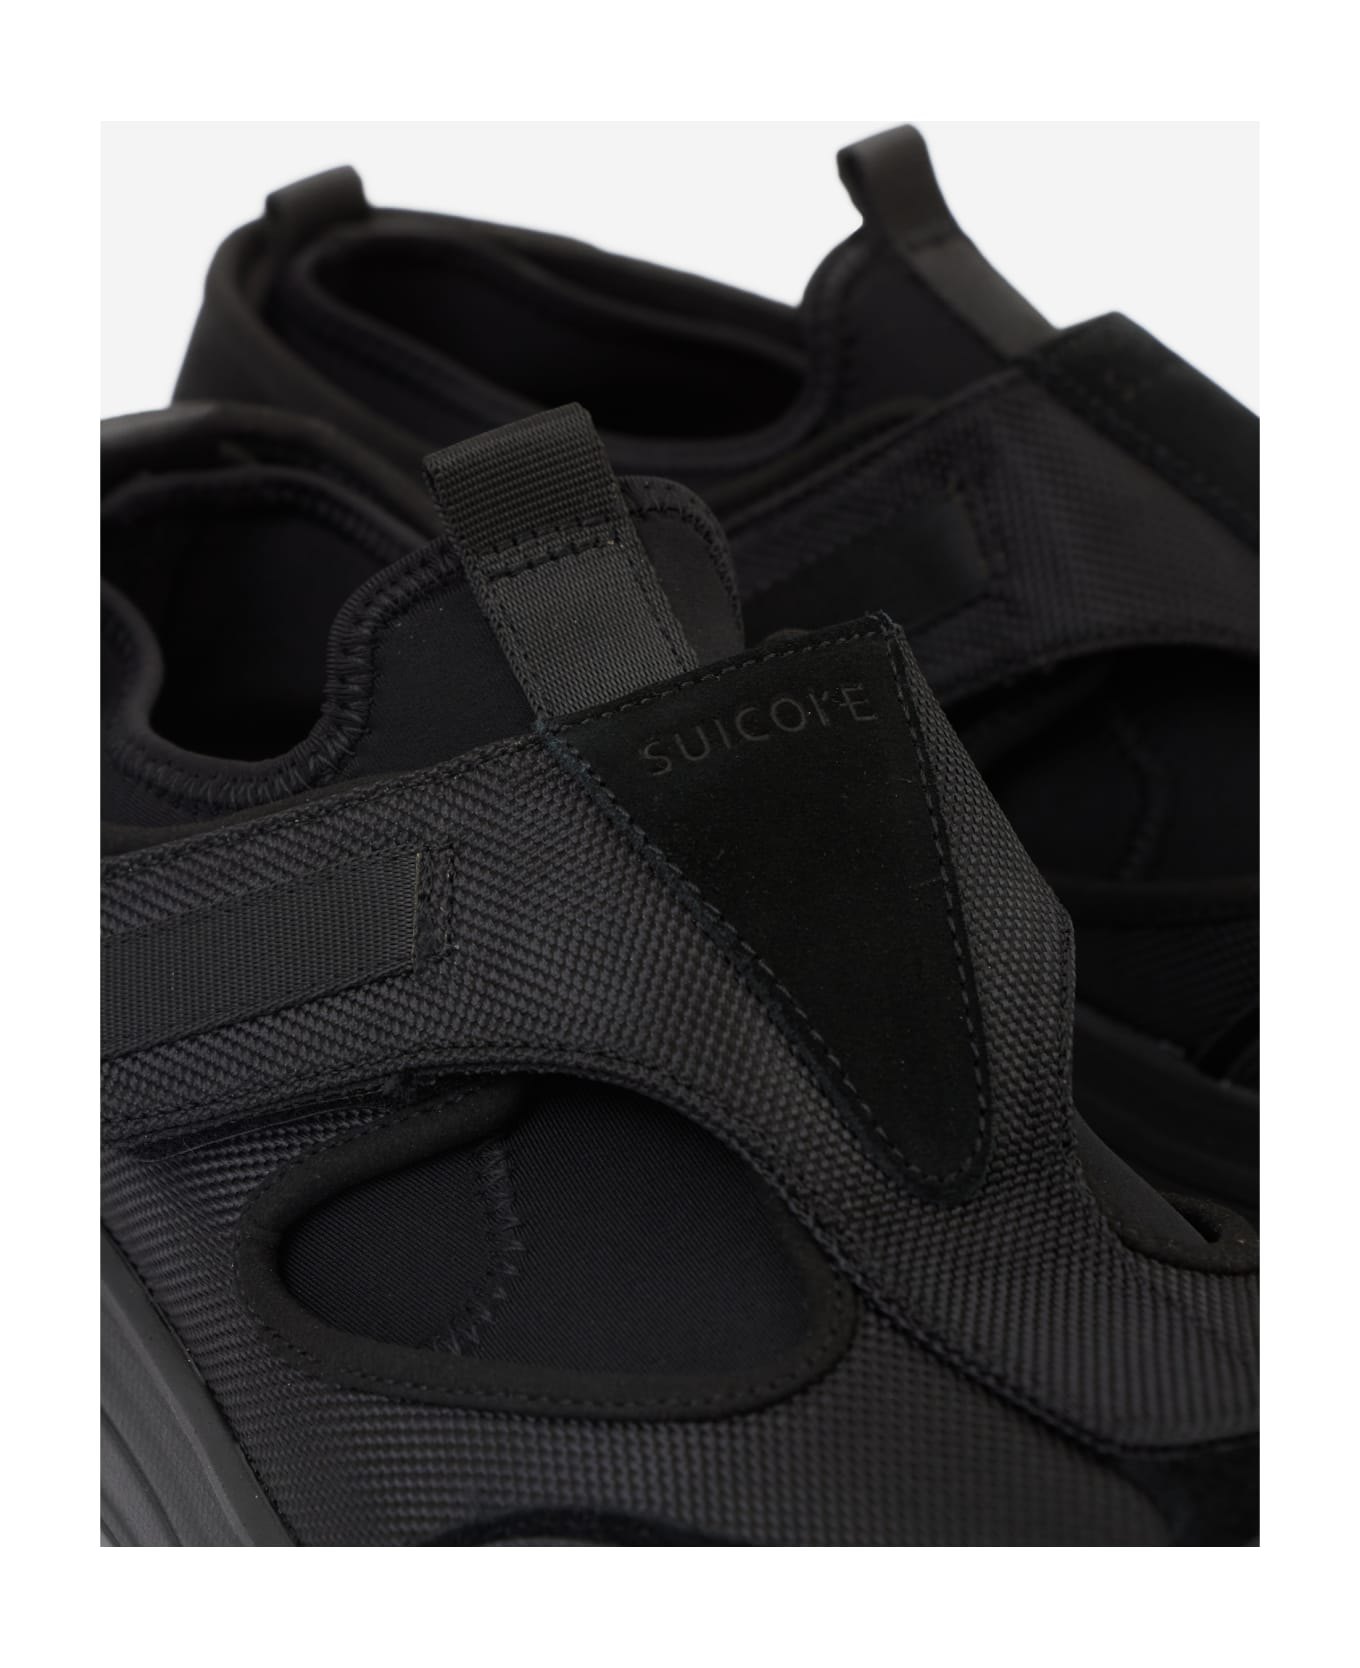 SUICOKE Tred Sneakers - black